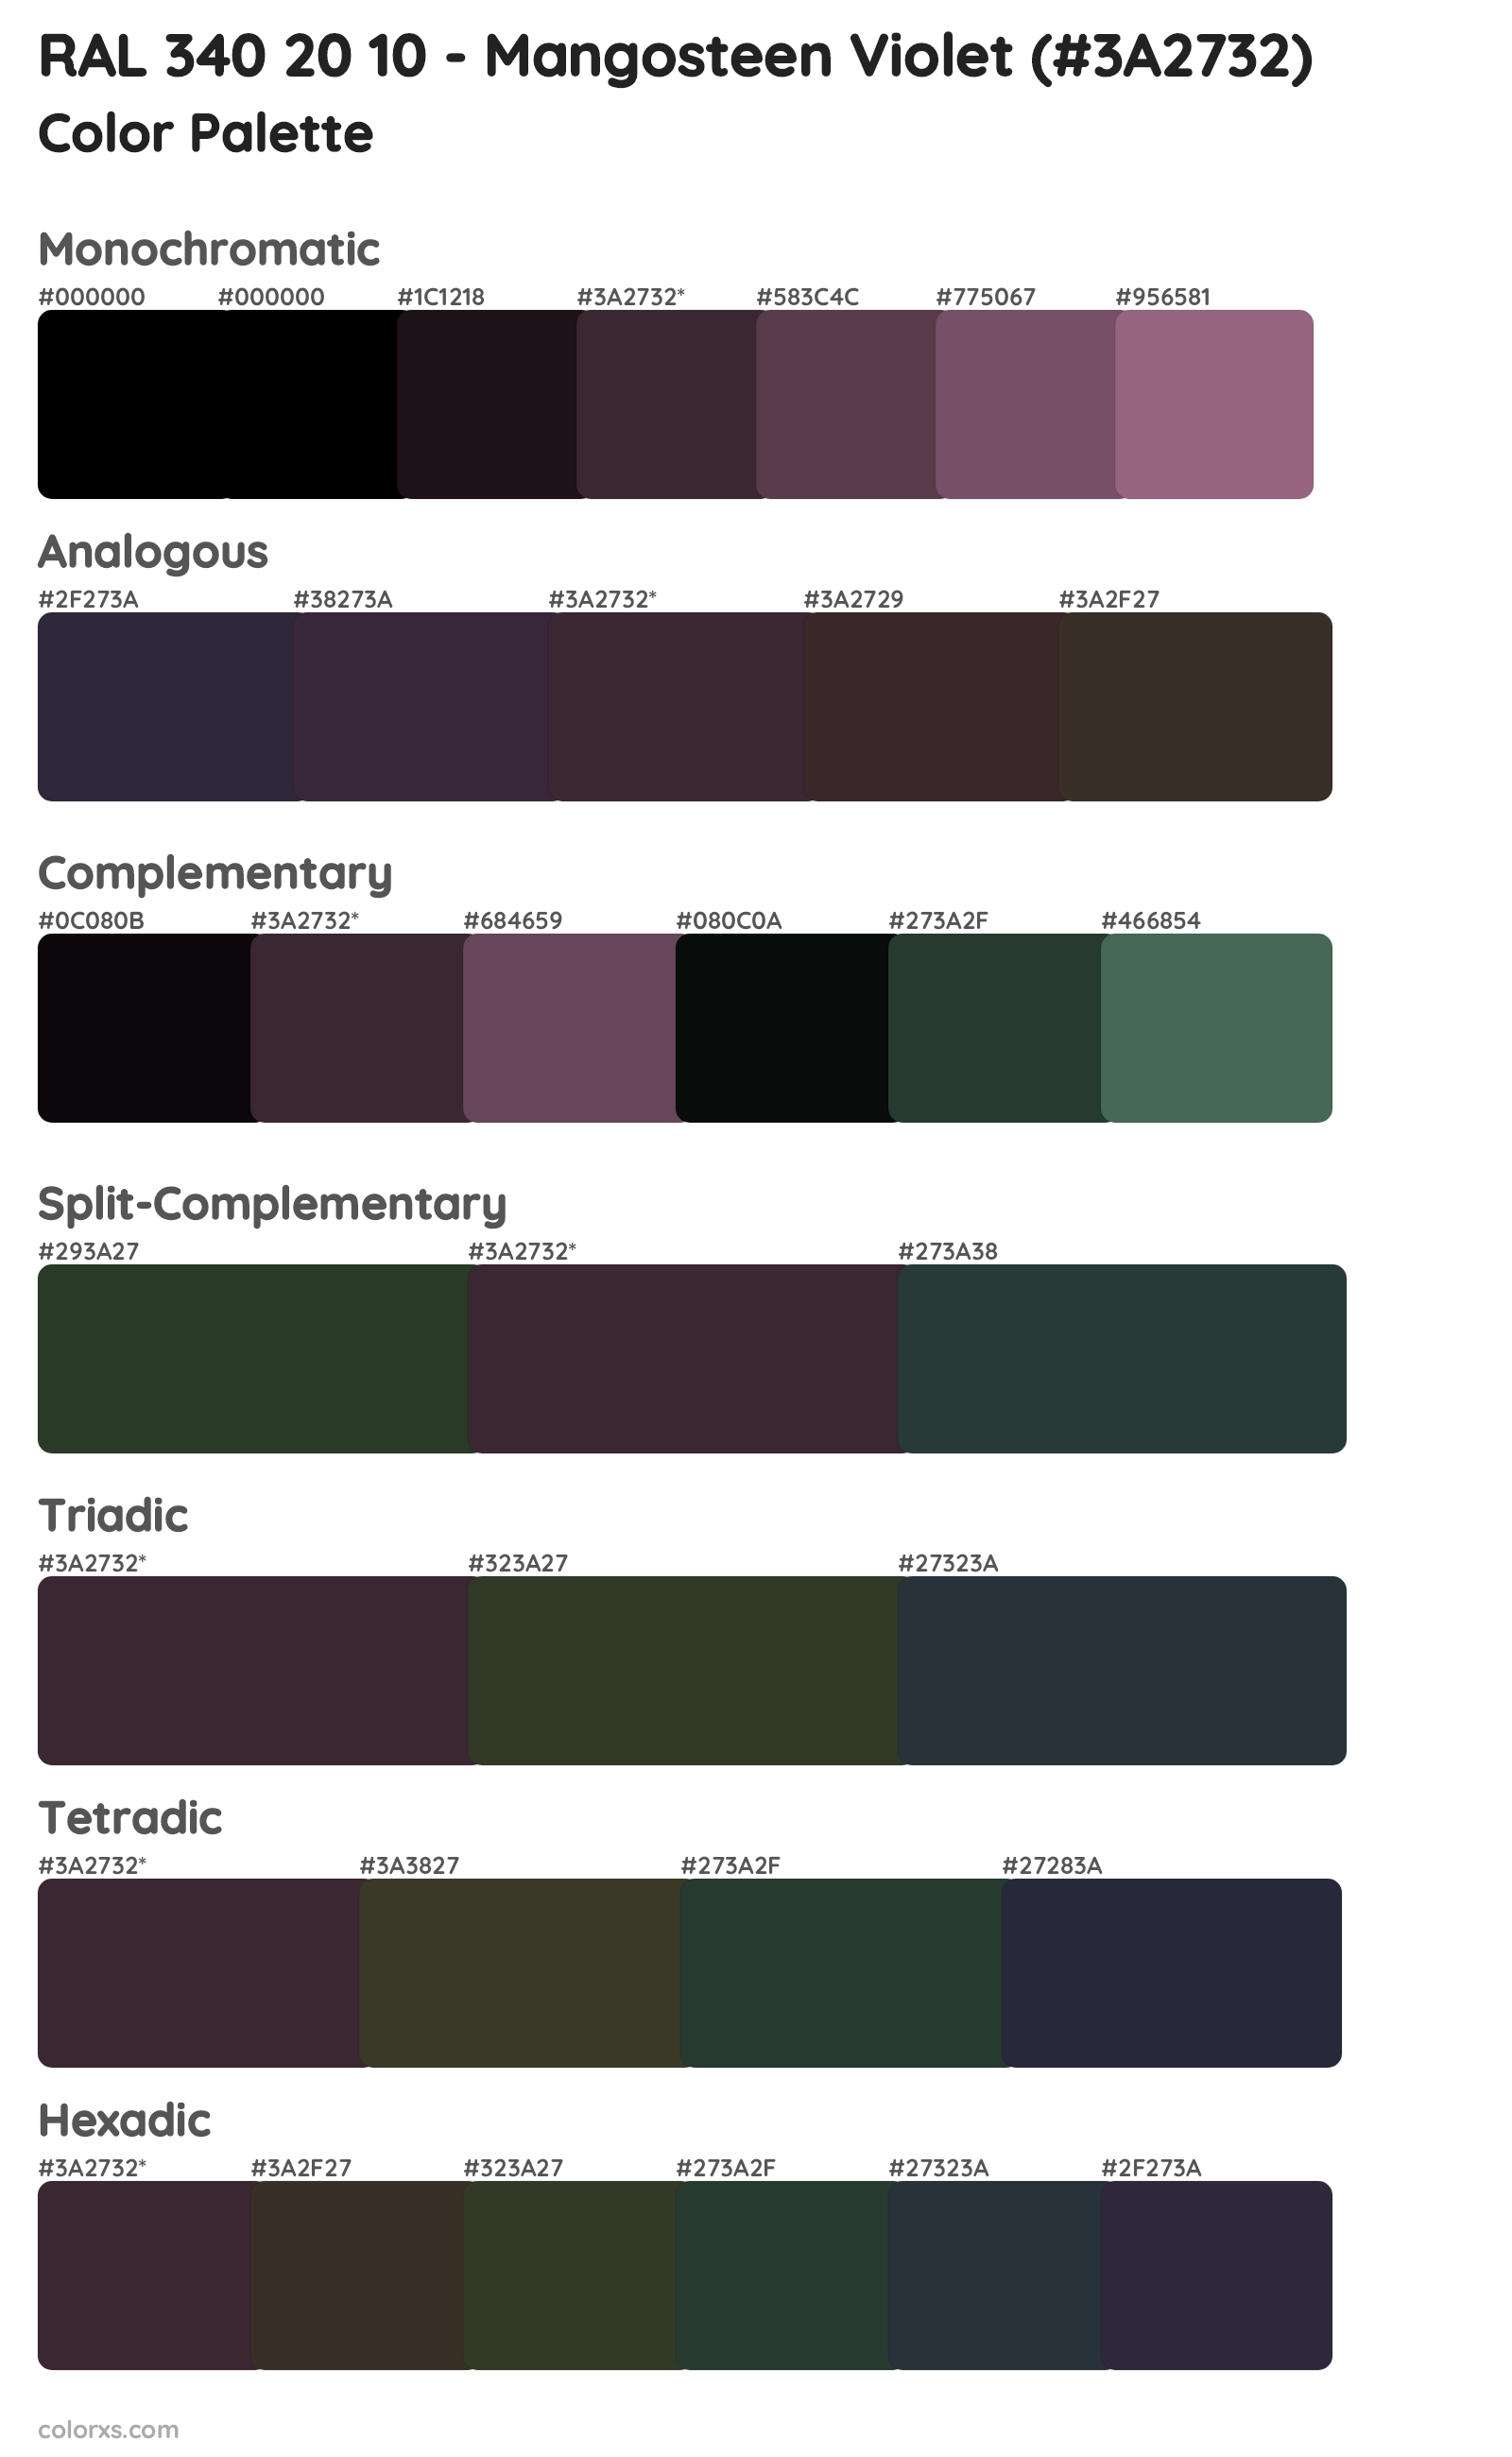 RAL 340 20 10 - Mangosteen Violet Color Scheme Palettes